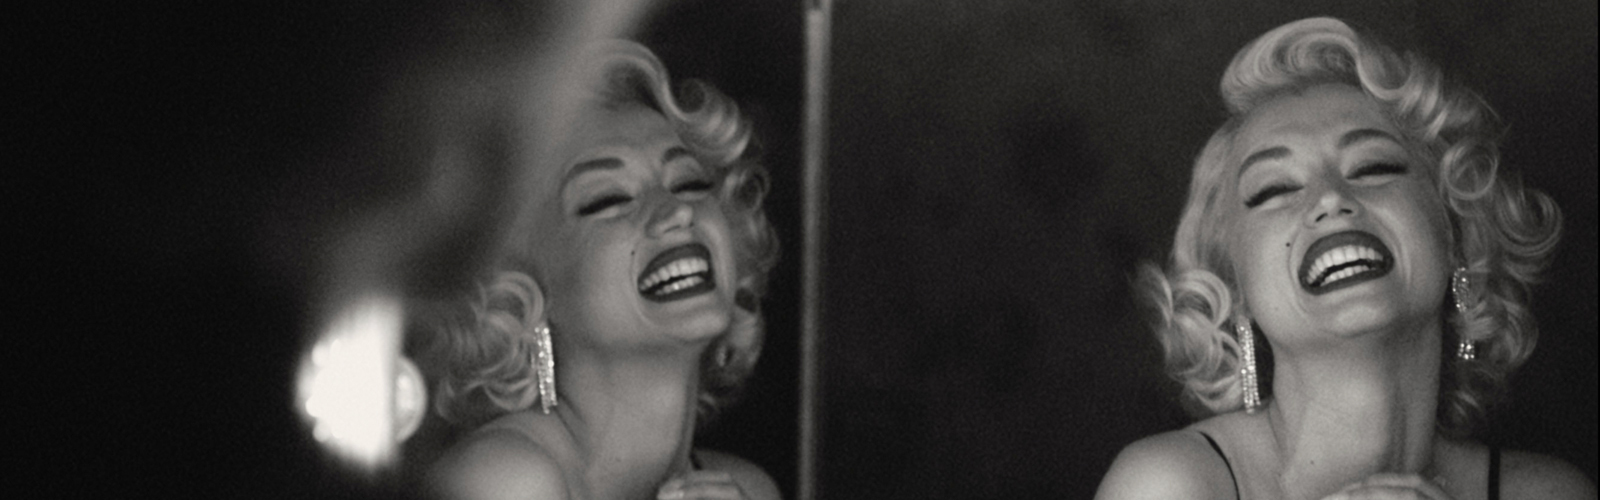 Ana De Armas as Marilyn Monroe